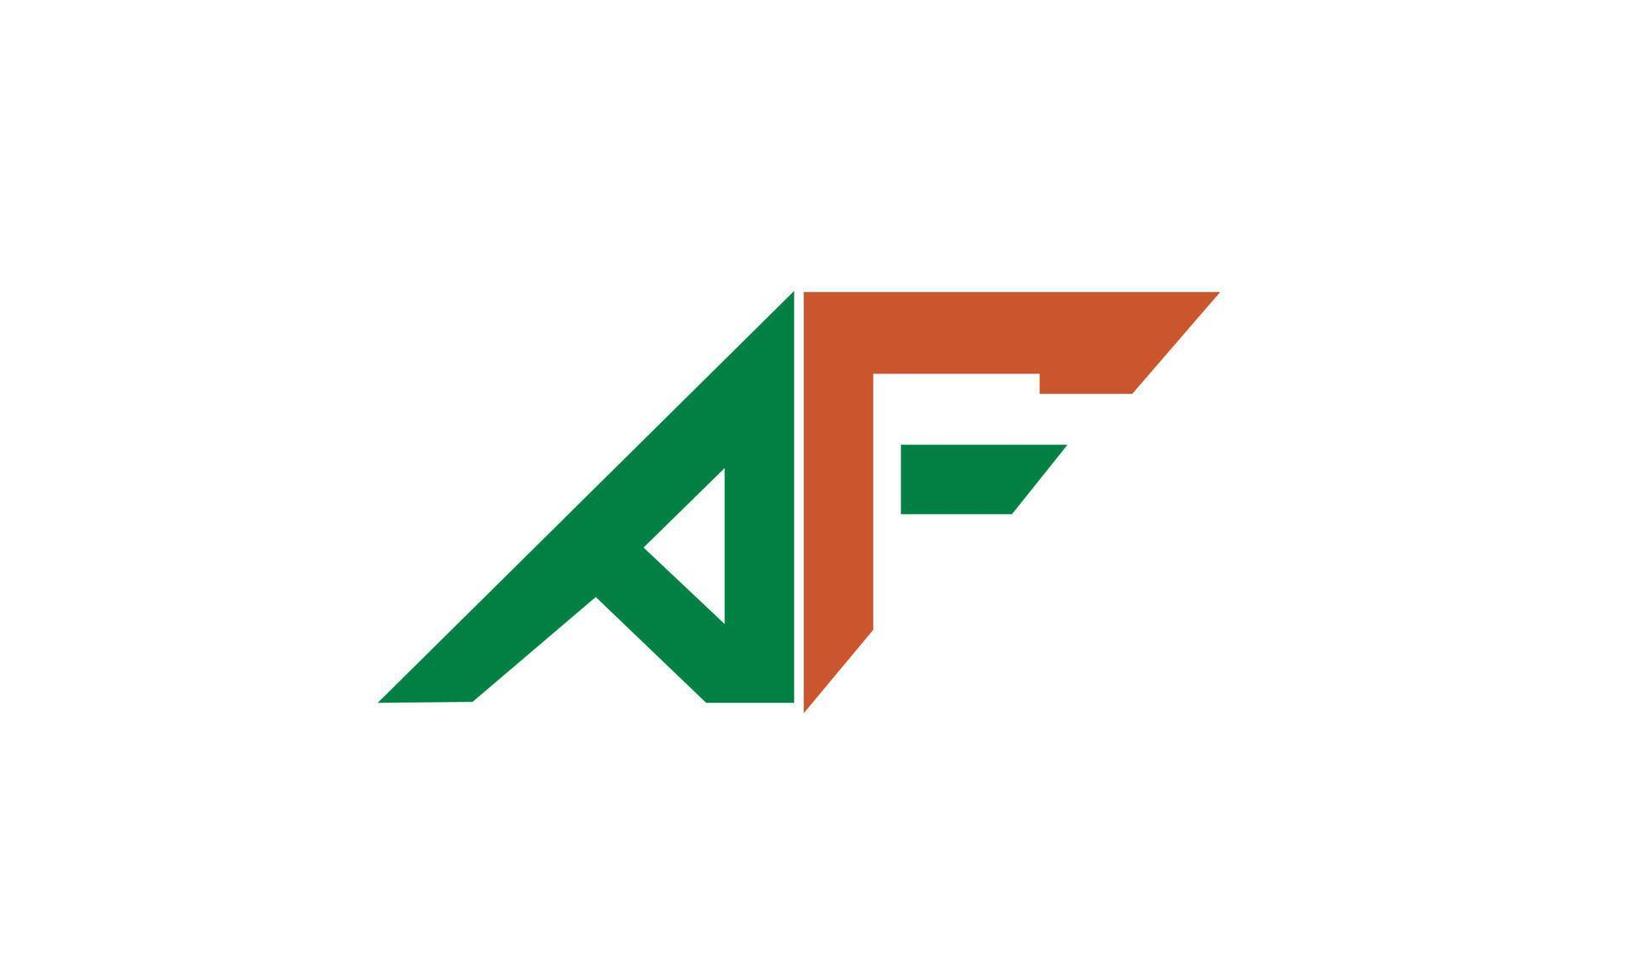 letras del alfabeto iniciales monograma logo af, fa, a y f vector